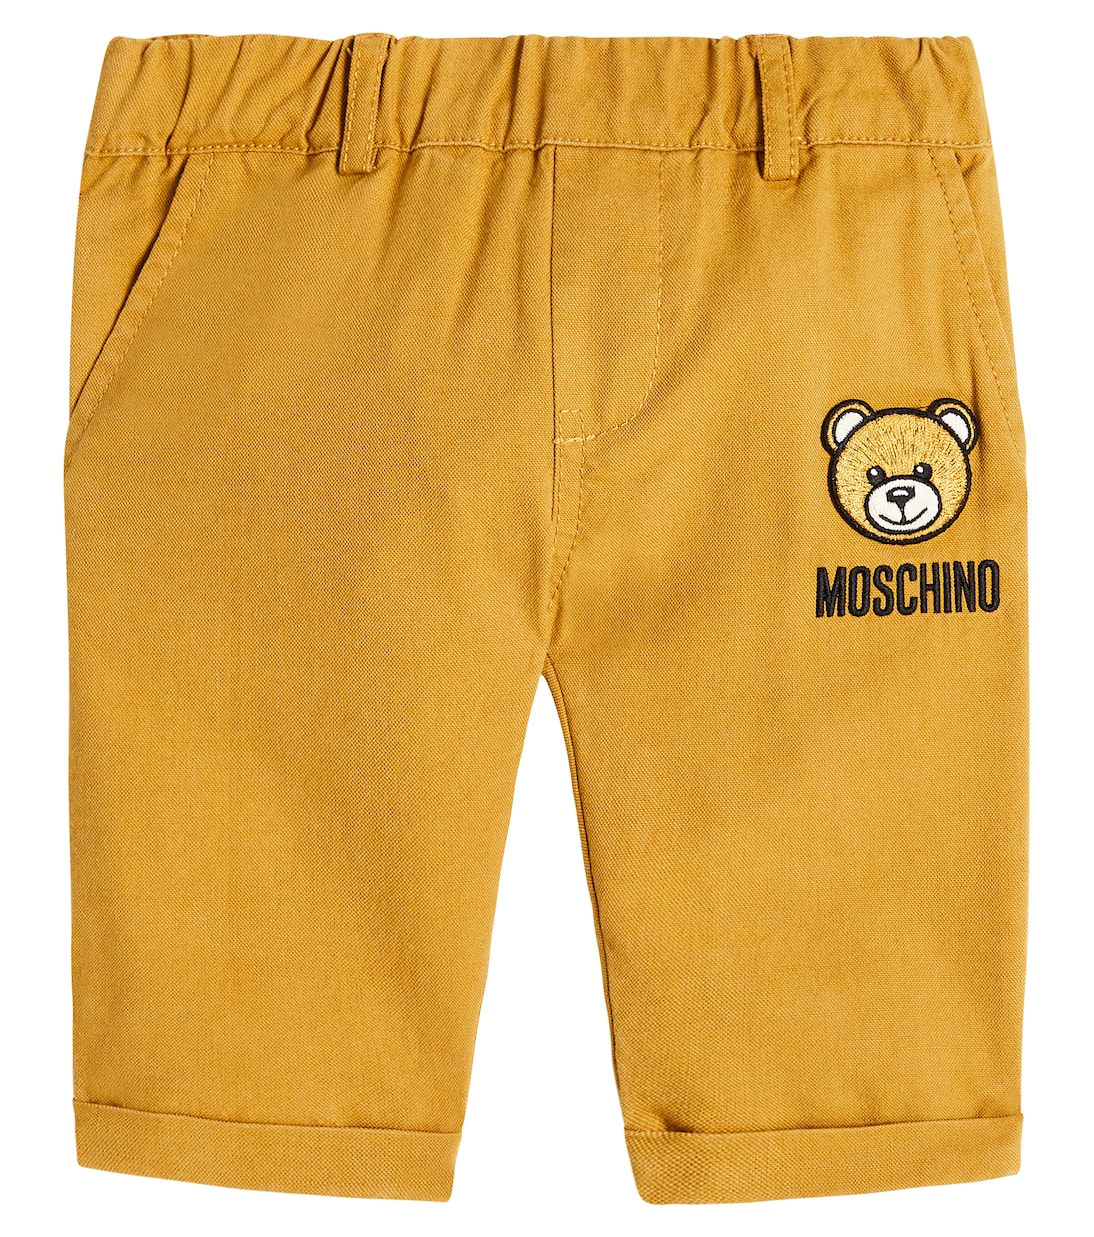 Брюки teddy bear из хлопка и льна Moschino, желтый blingpaw teddy bear для прогулок с буквенным принтом футболка из чистого хлопка унисекс топ и летние футболки на заказ 16 видов цветов